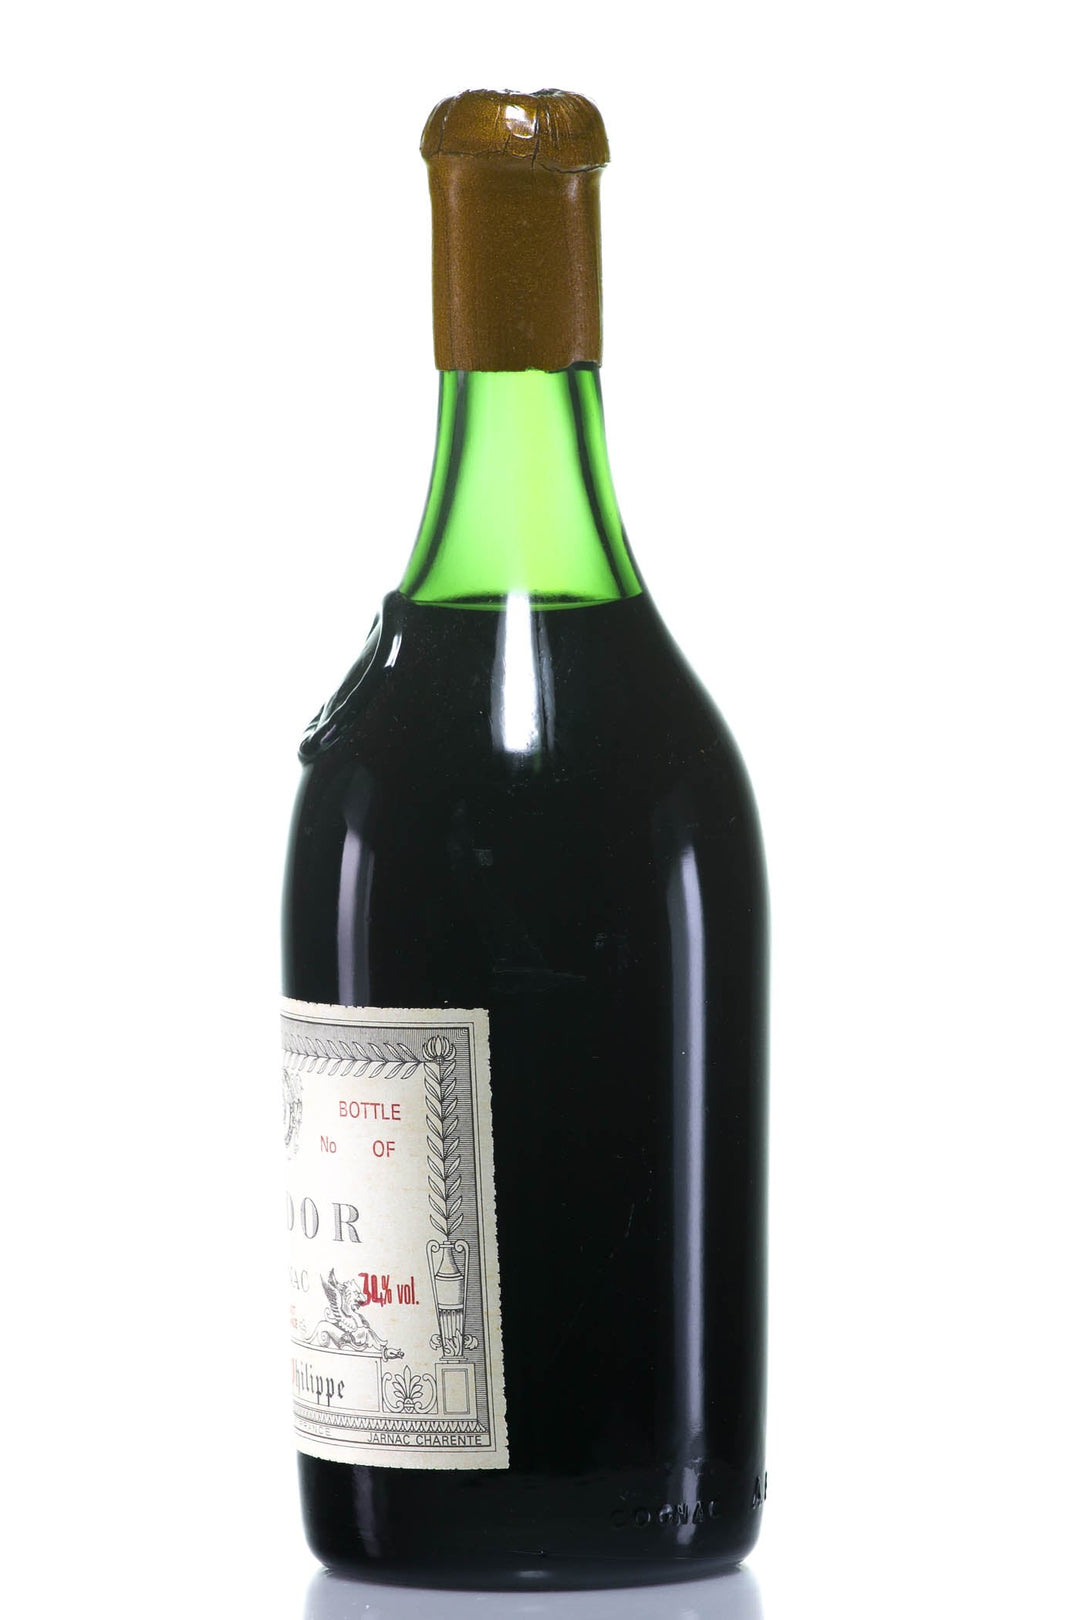 A.E. Dor Vieille Reserve No. 5 Grande Champagne Cognac Vintage 1840 - legendaryvintages